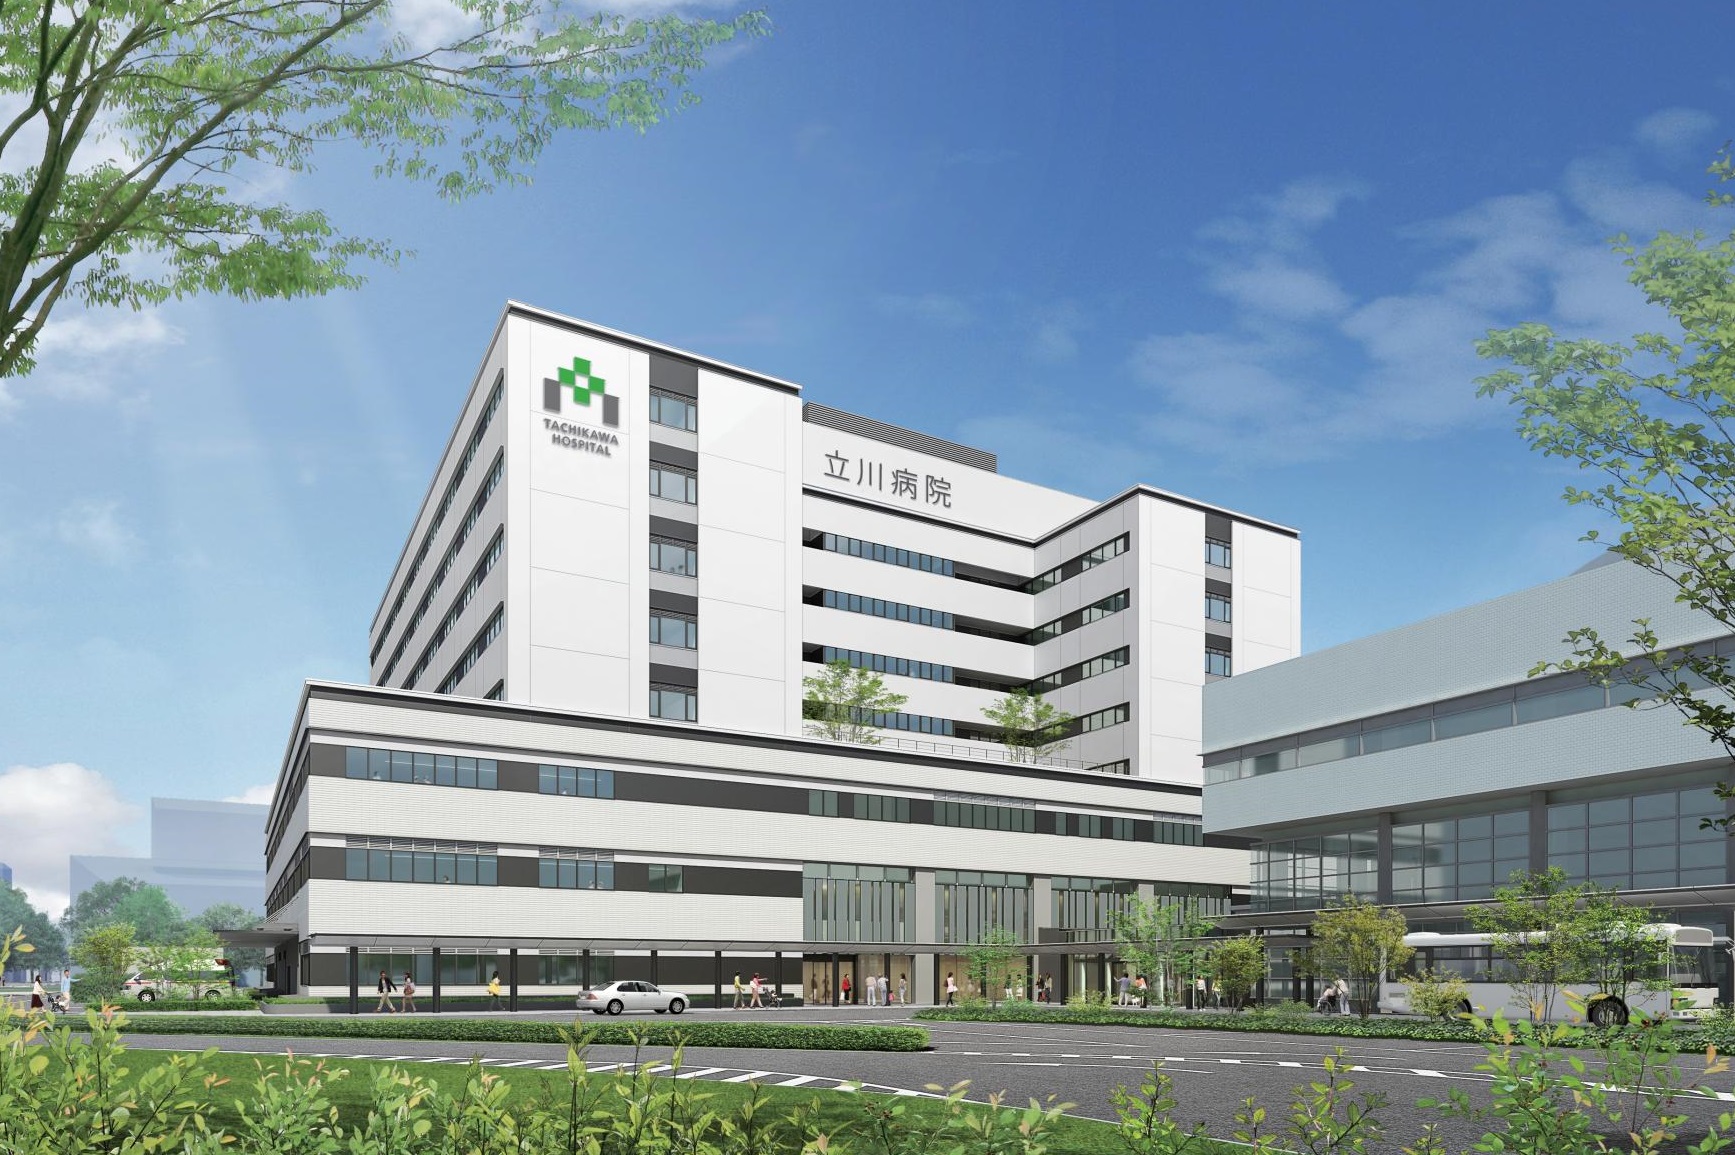 2017年7月に新病院棟がオープンしました。
テレビドラマや映画等のロケ撮影依頼が多い綺麗な病院です。